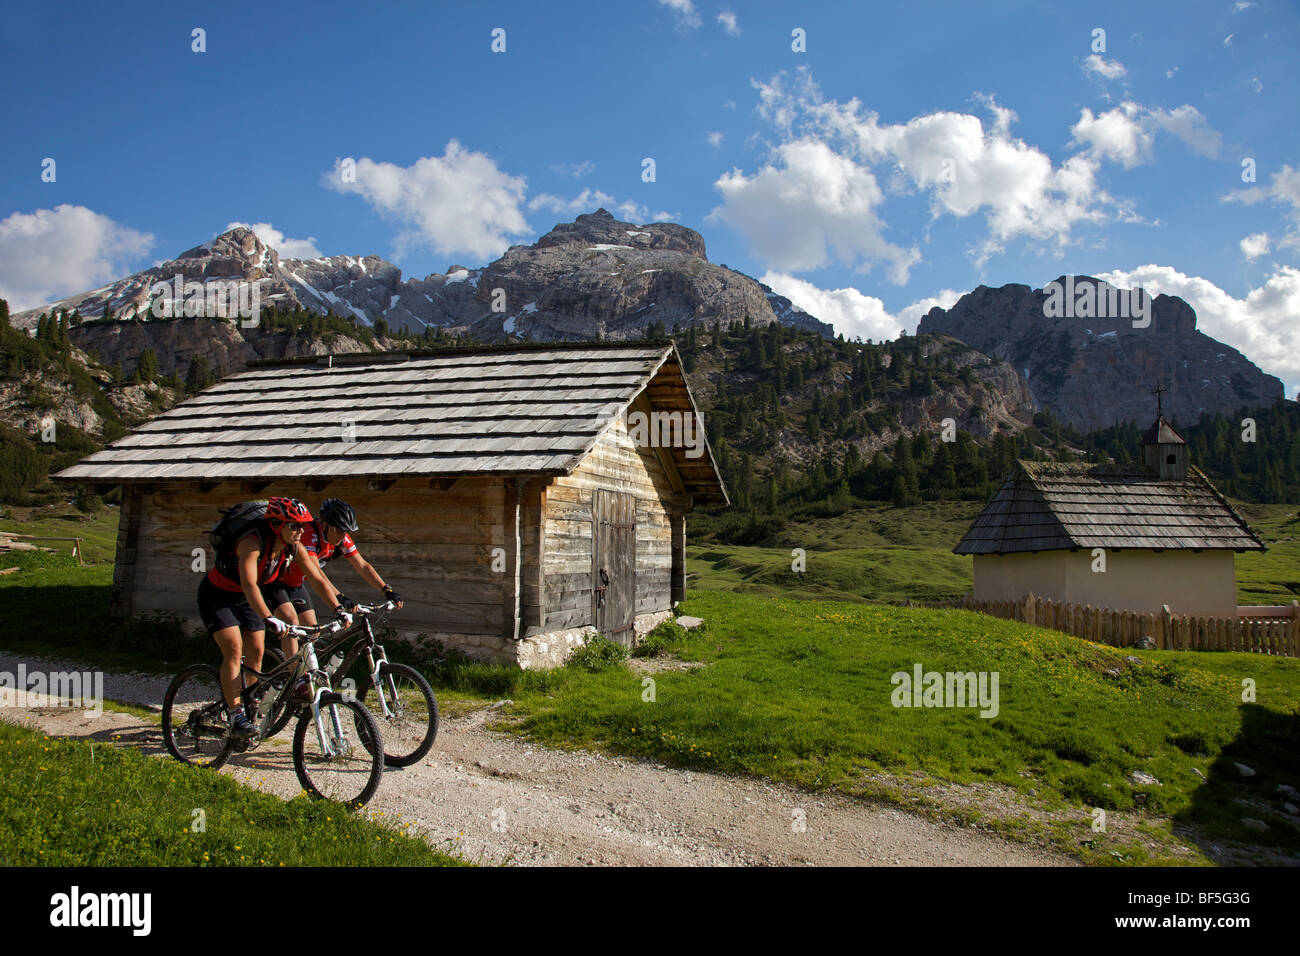 Les coureurs de vélo de montagne dans le village de montagne de Fodara Vedla, Parco Naturale Fanes-Sennes-Braies, le Trentin, le Tyrol du Sud, Italie, Union européenne Banque D'Images